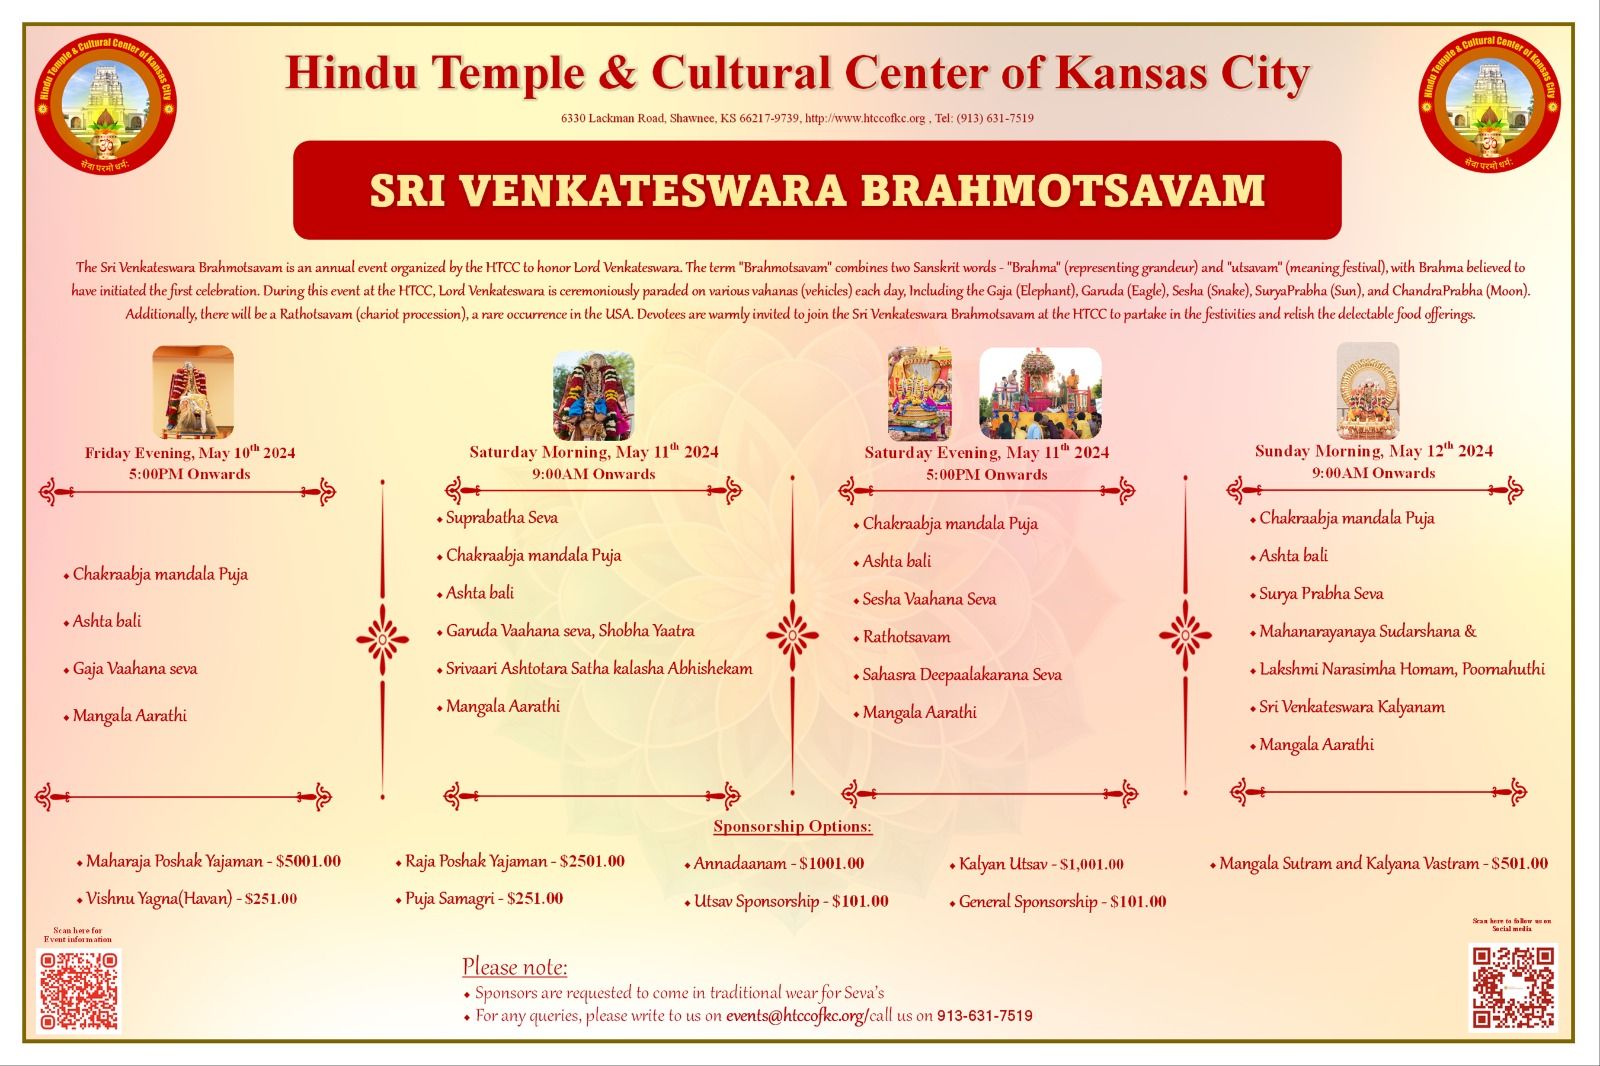 Sri Venkateswara Brahmotsavam